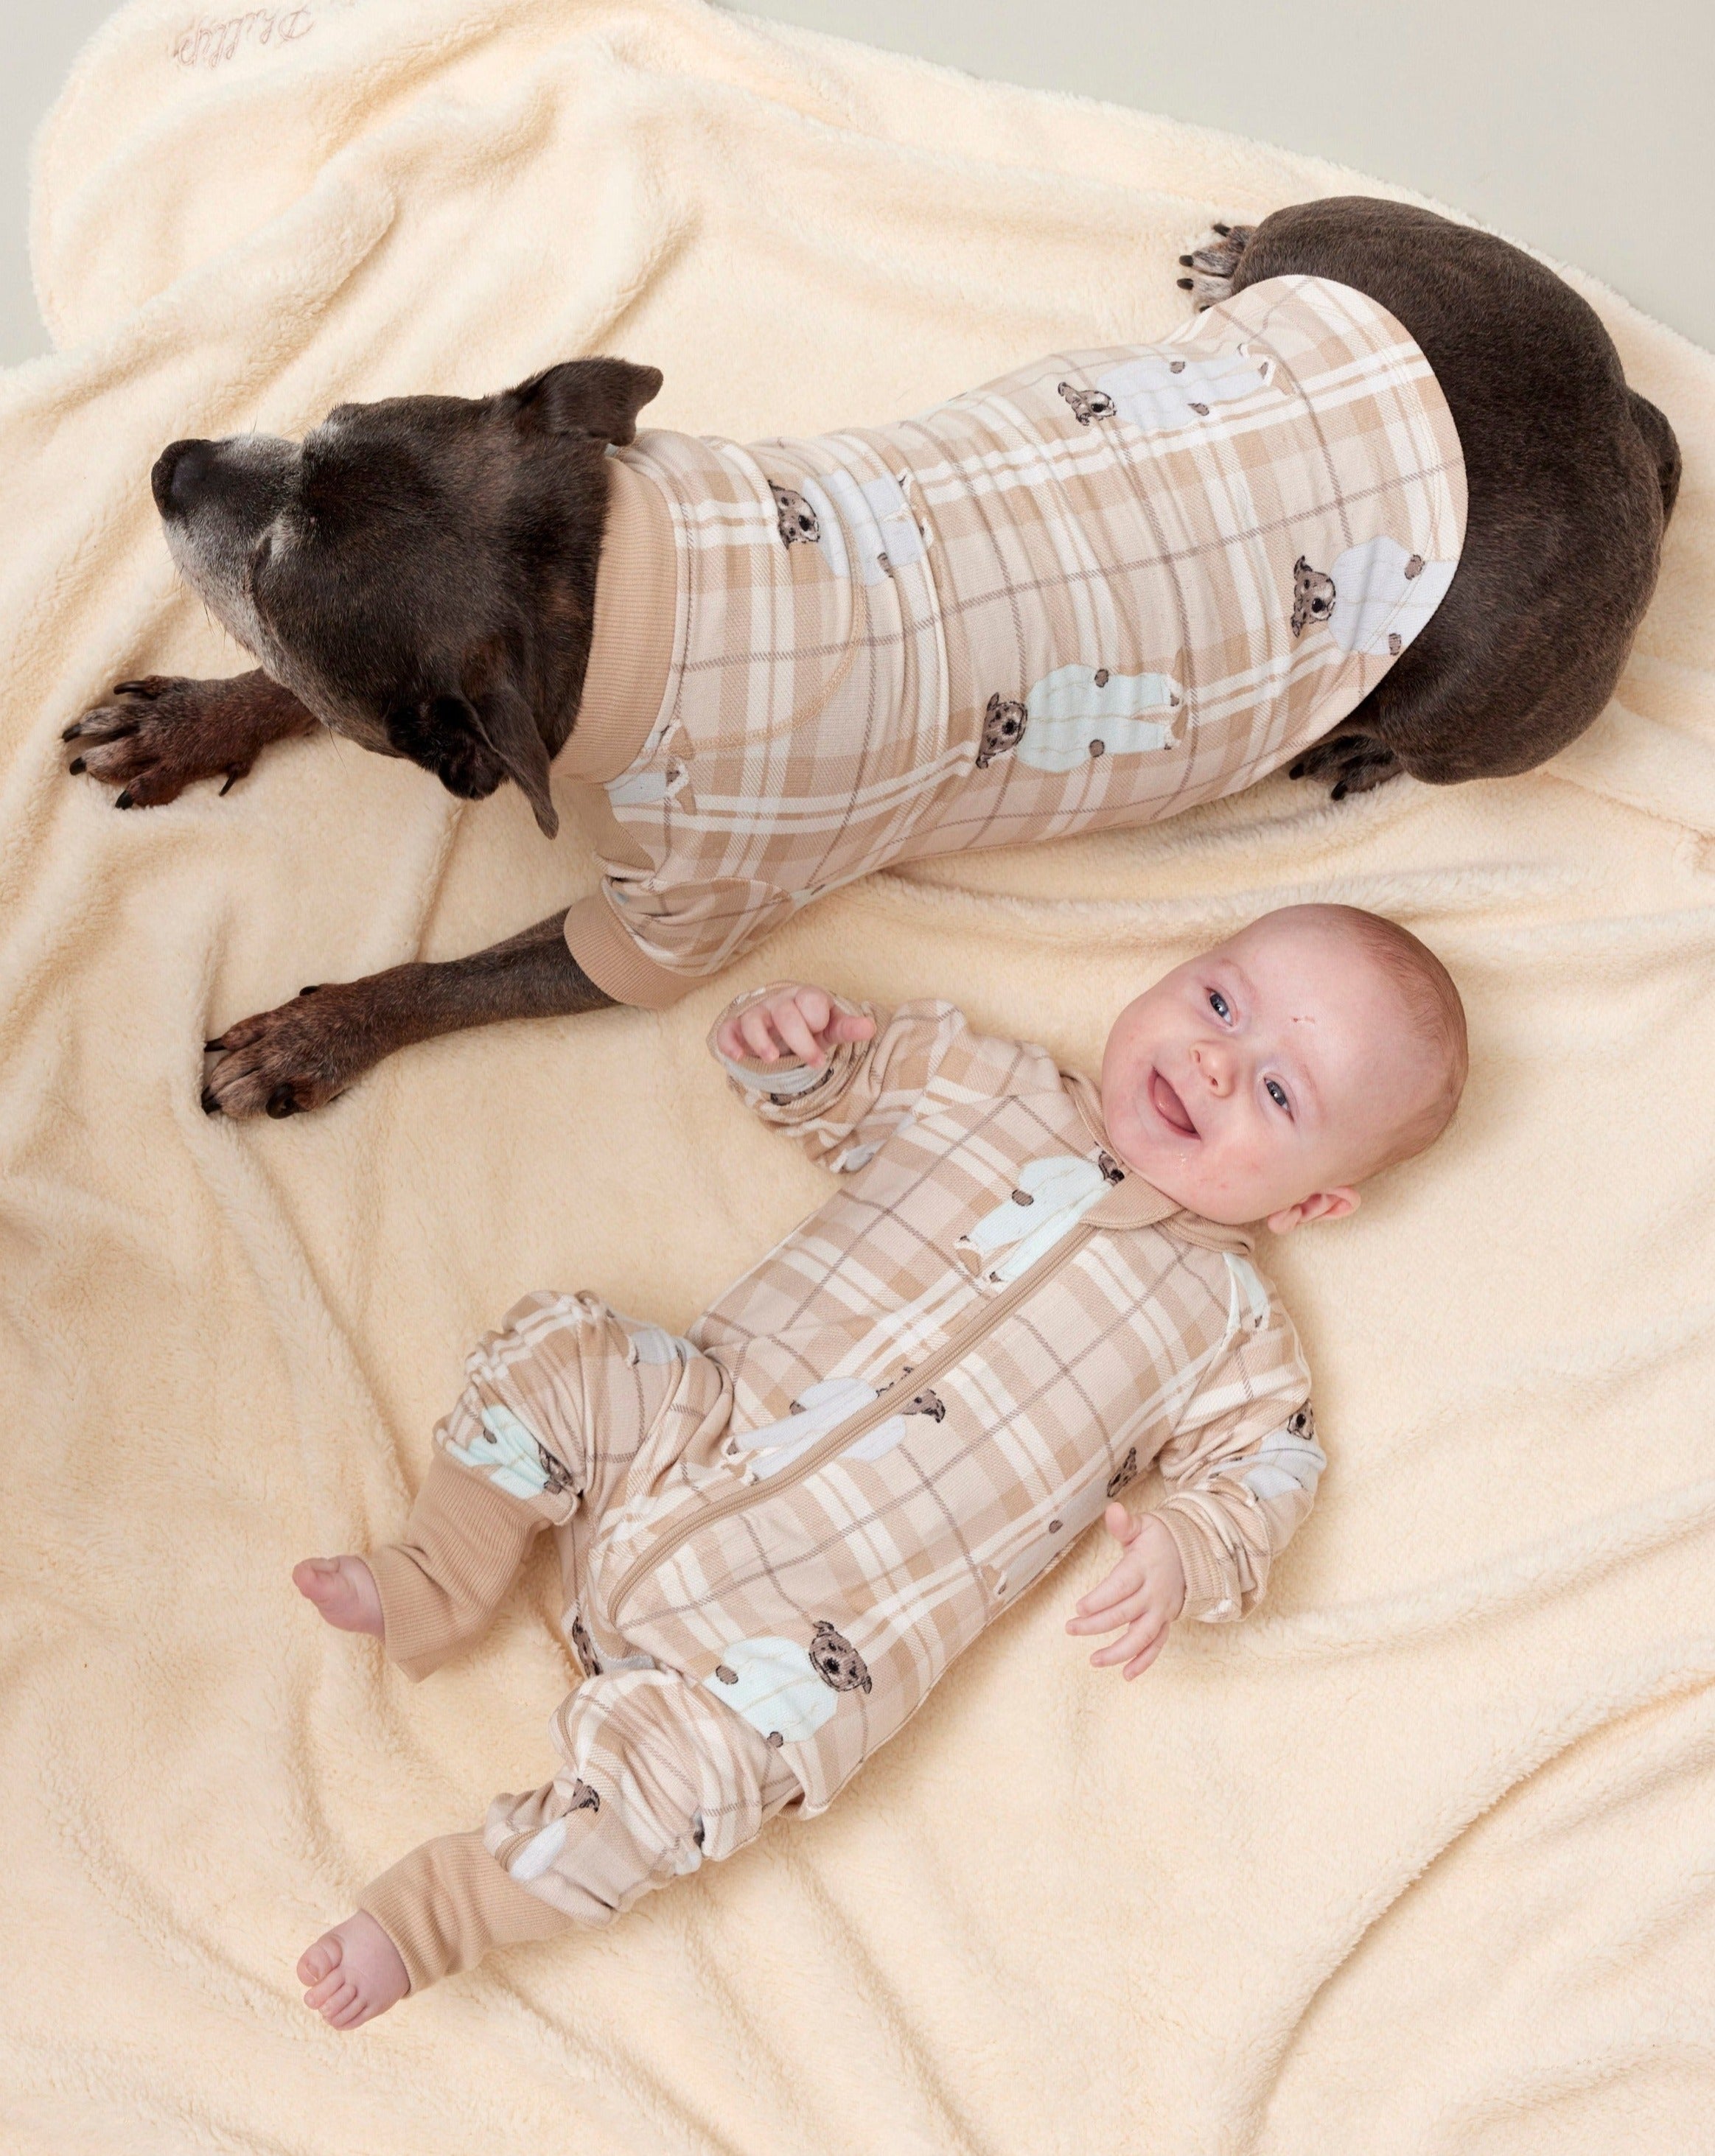 Darren and Phillip match your dog pyjamas.